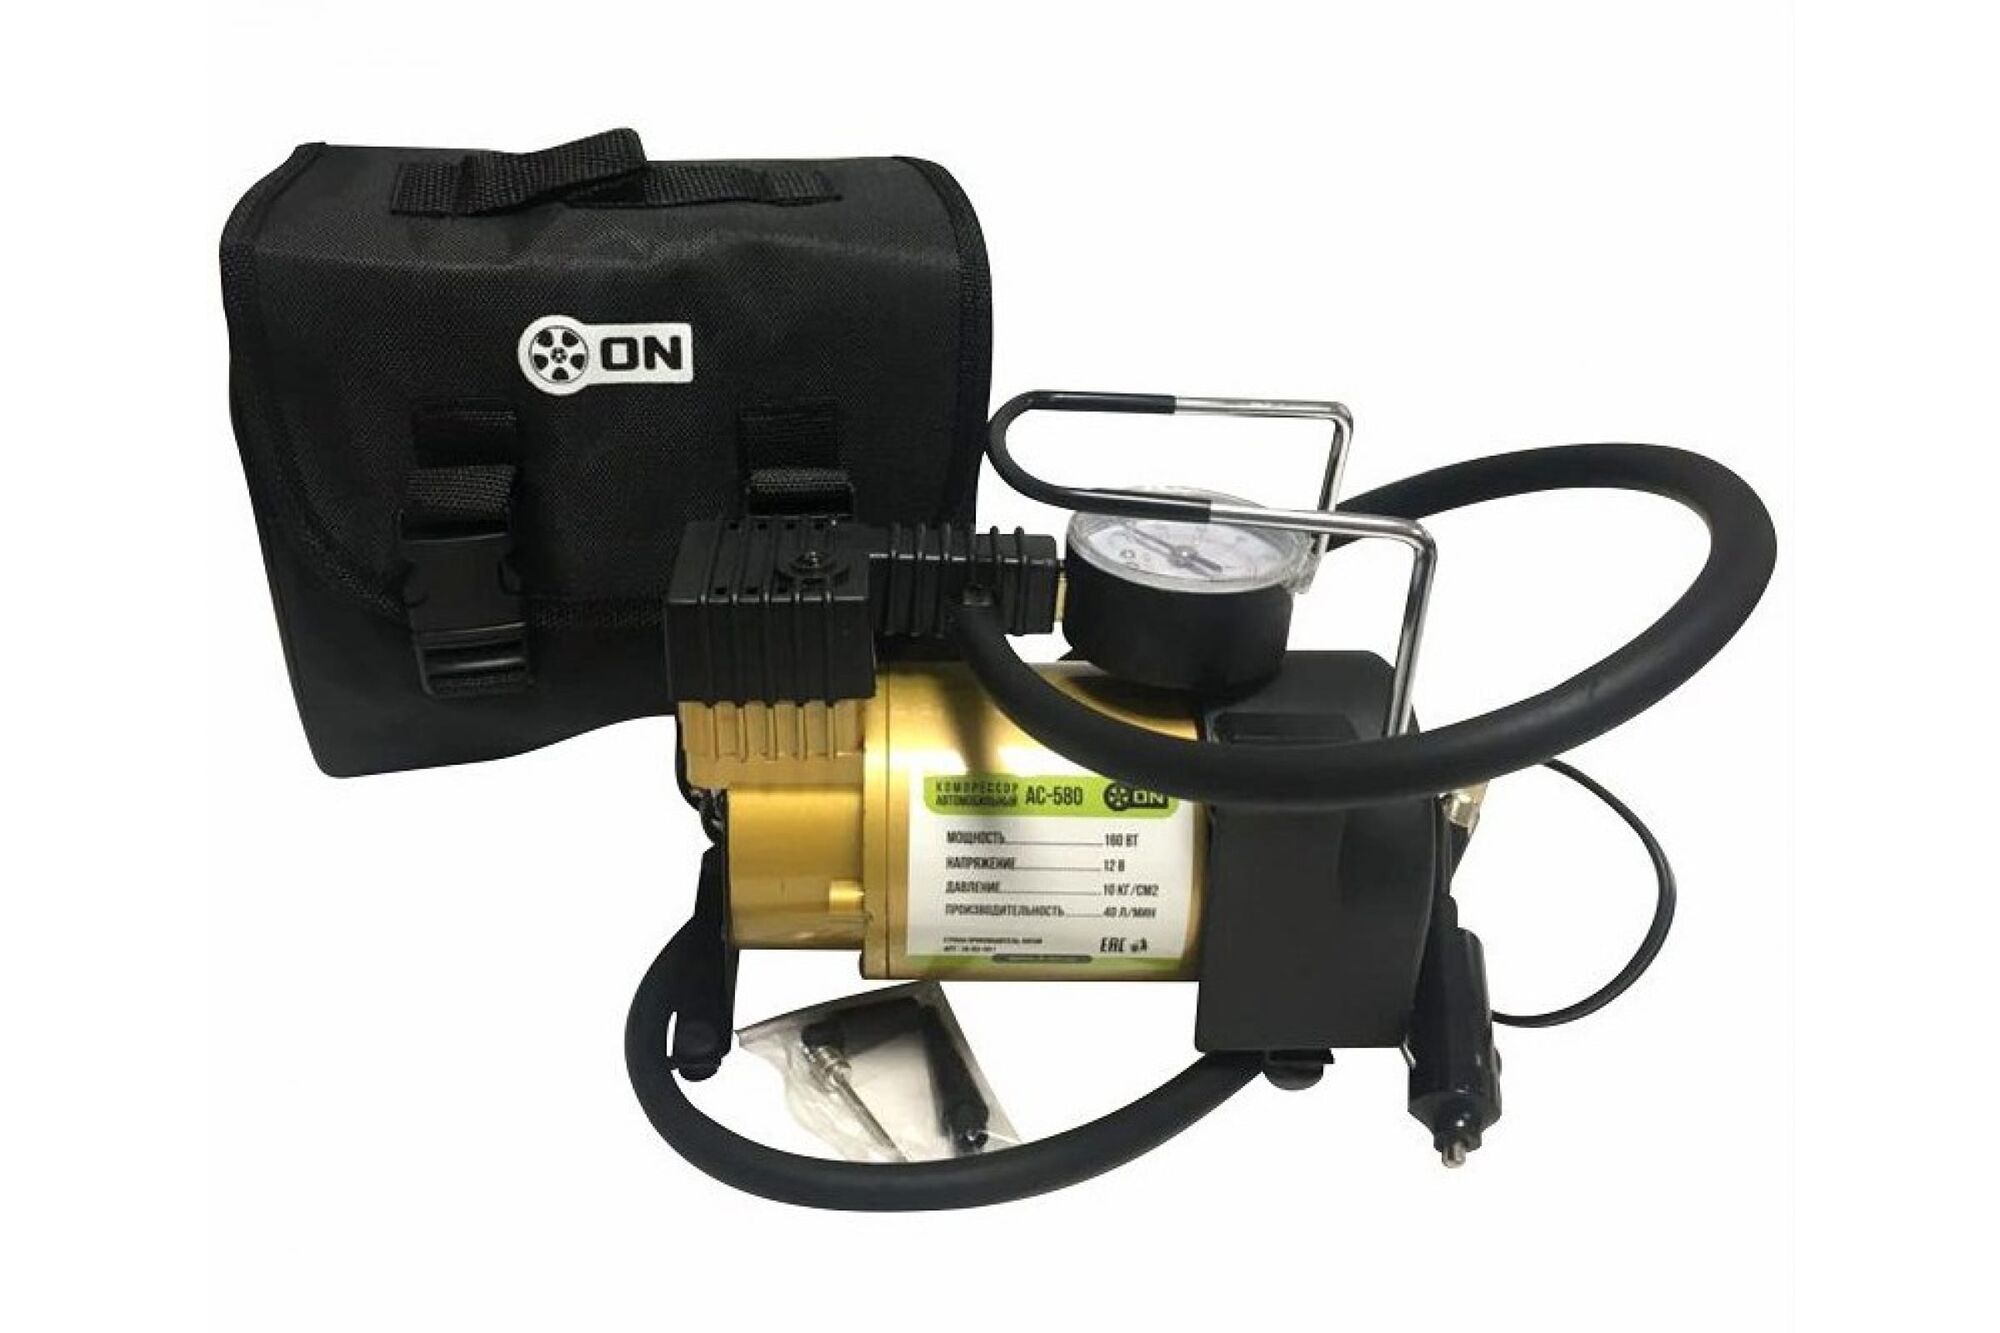 Автомобильный компрессор ON АС-580, тип Торнадо Оптима, в сумке, 35лмин, 150 Вт, 12 В. 16-03-000